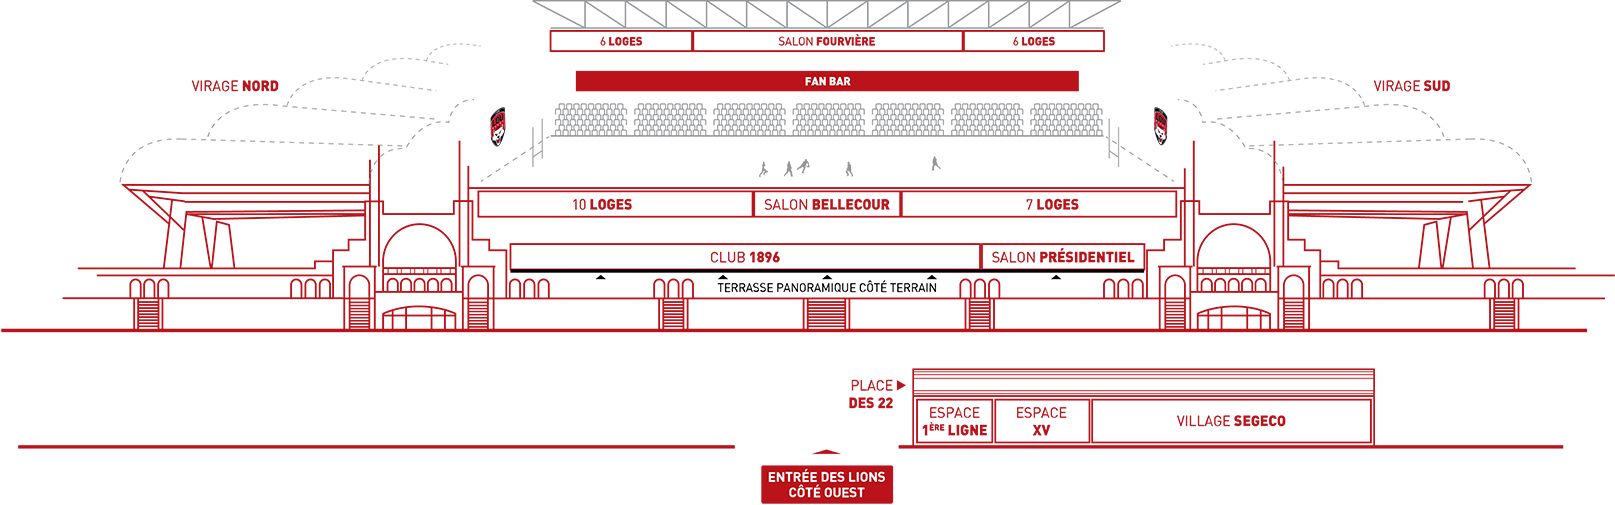 Espace Fan bar Matmut Stadium Lyon Gerland plan schématique 